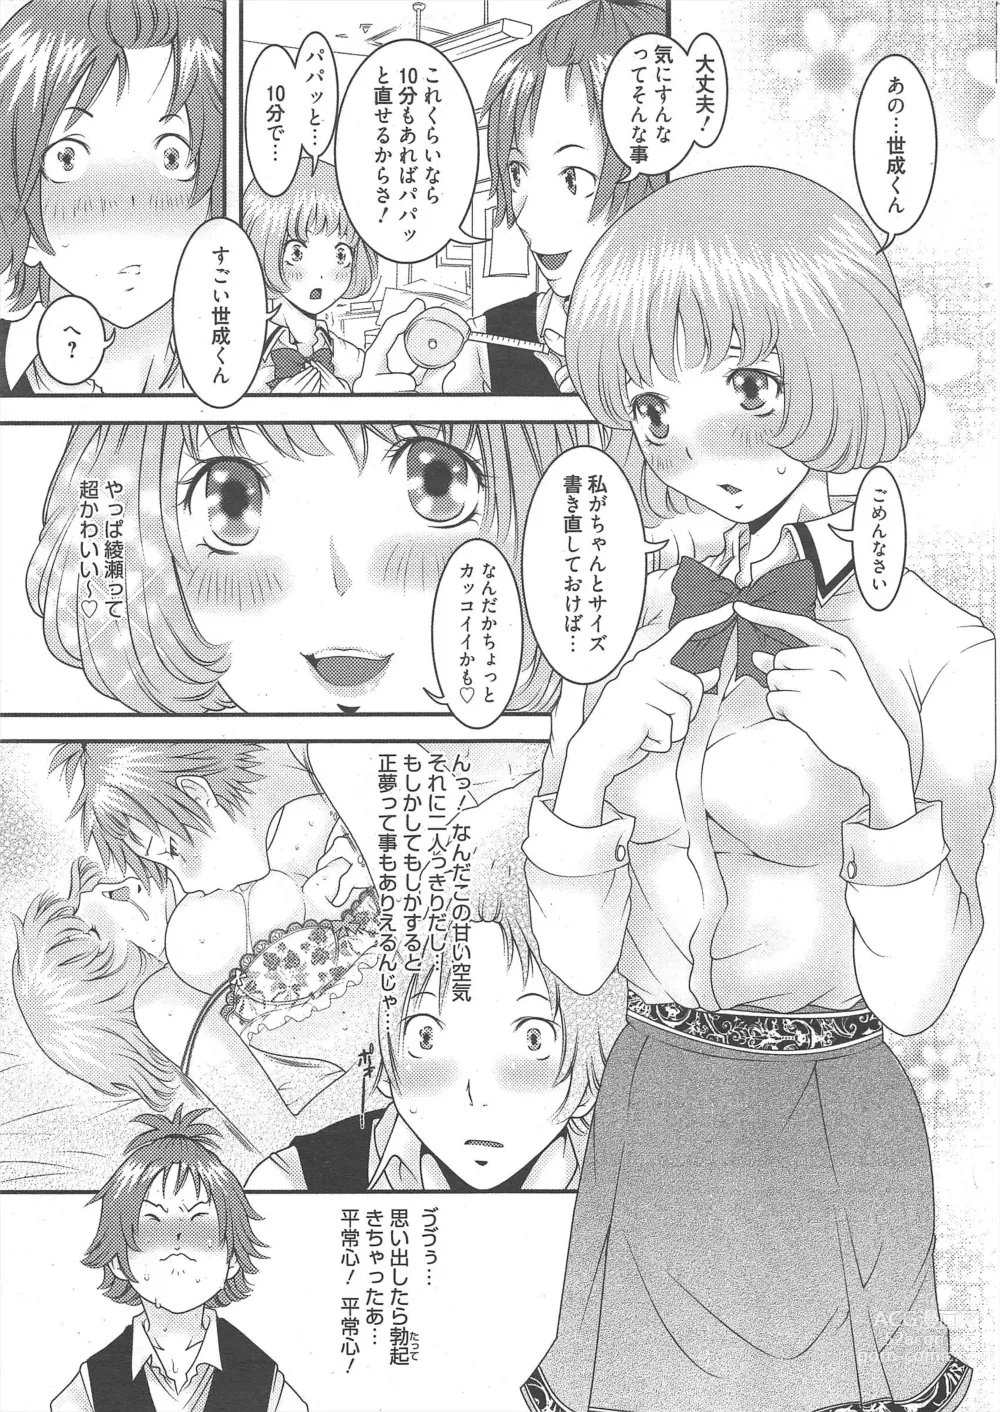 Page 13 of manga Manga Bangaichi 2012-10